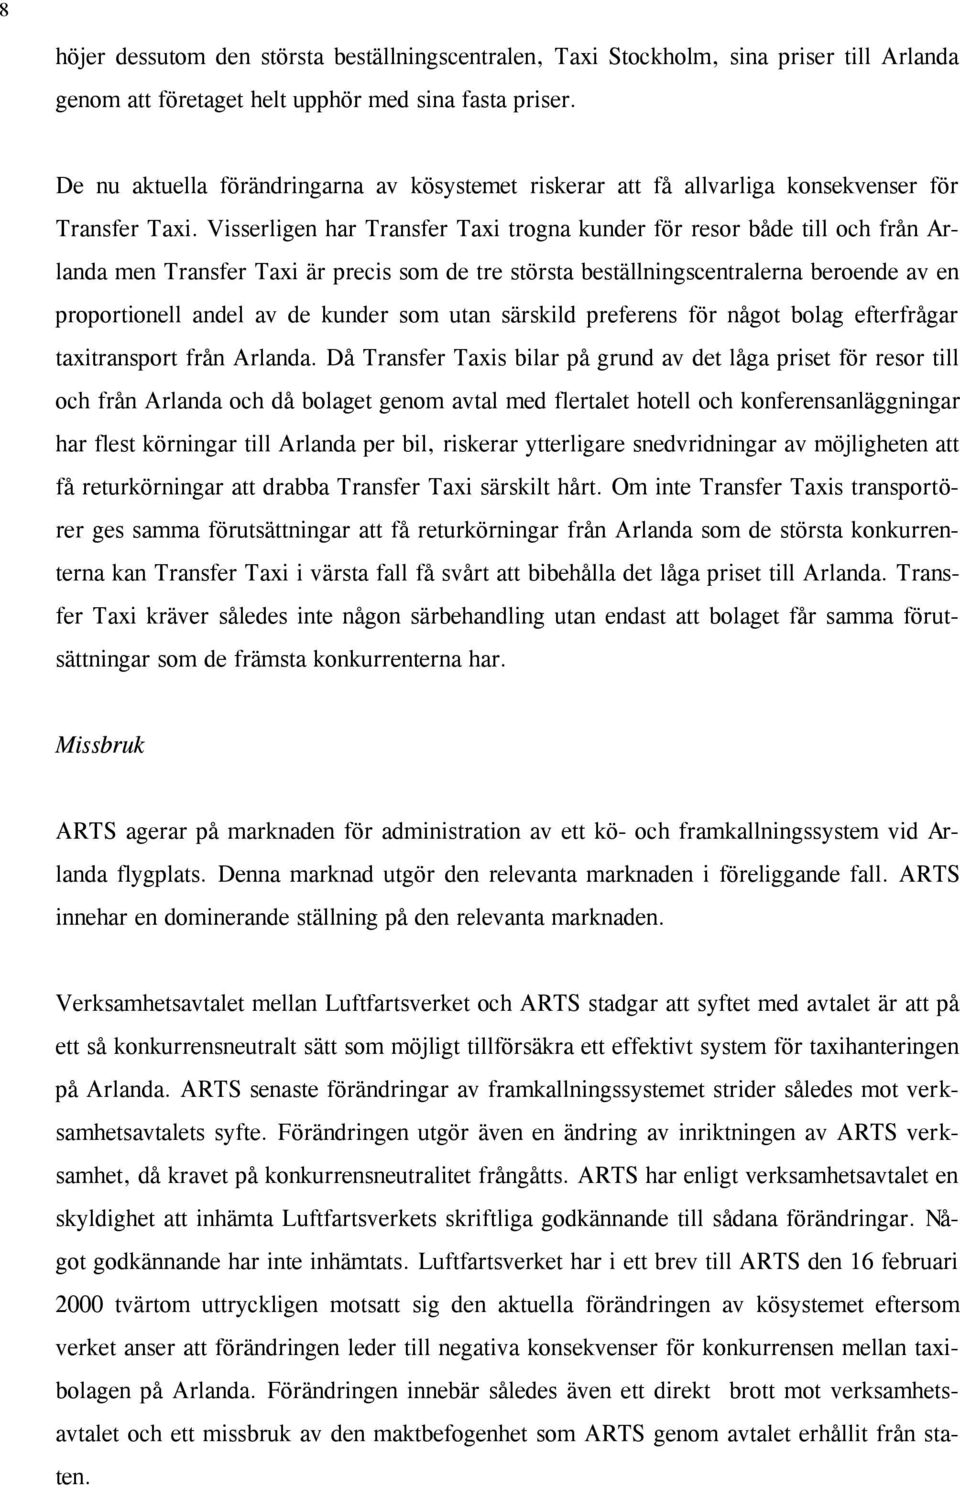 Visserligen har Transfer Taxi trogna kunder för resor både till och från Arlanda men Transfer Taxi är precis som de tre största beställningscentralerna beroende av en proportionell andel av de kunder